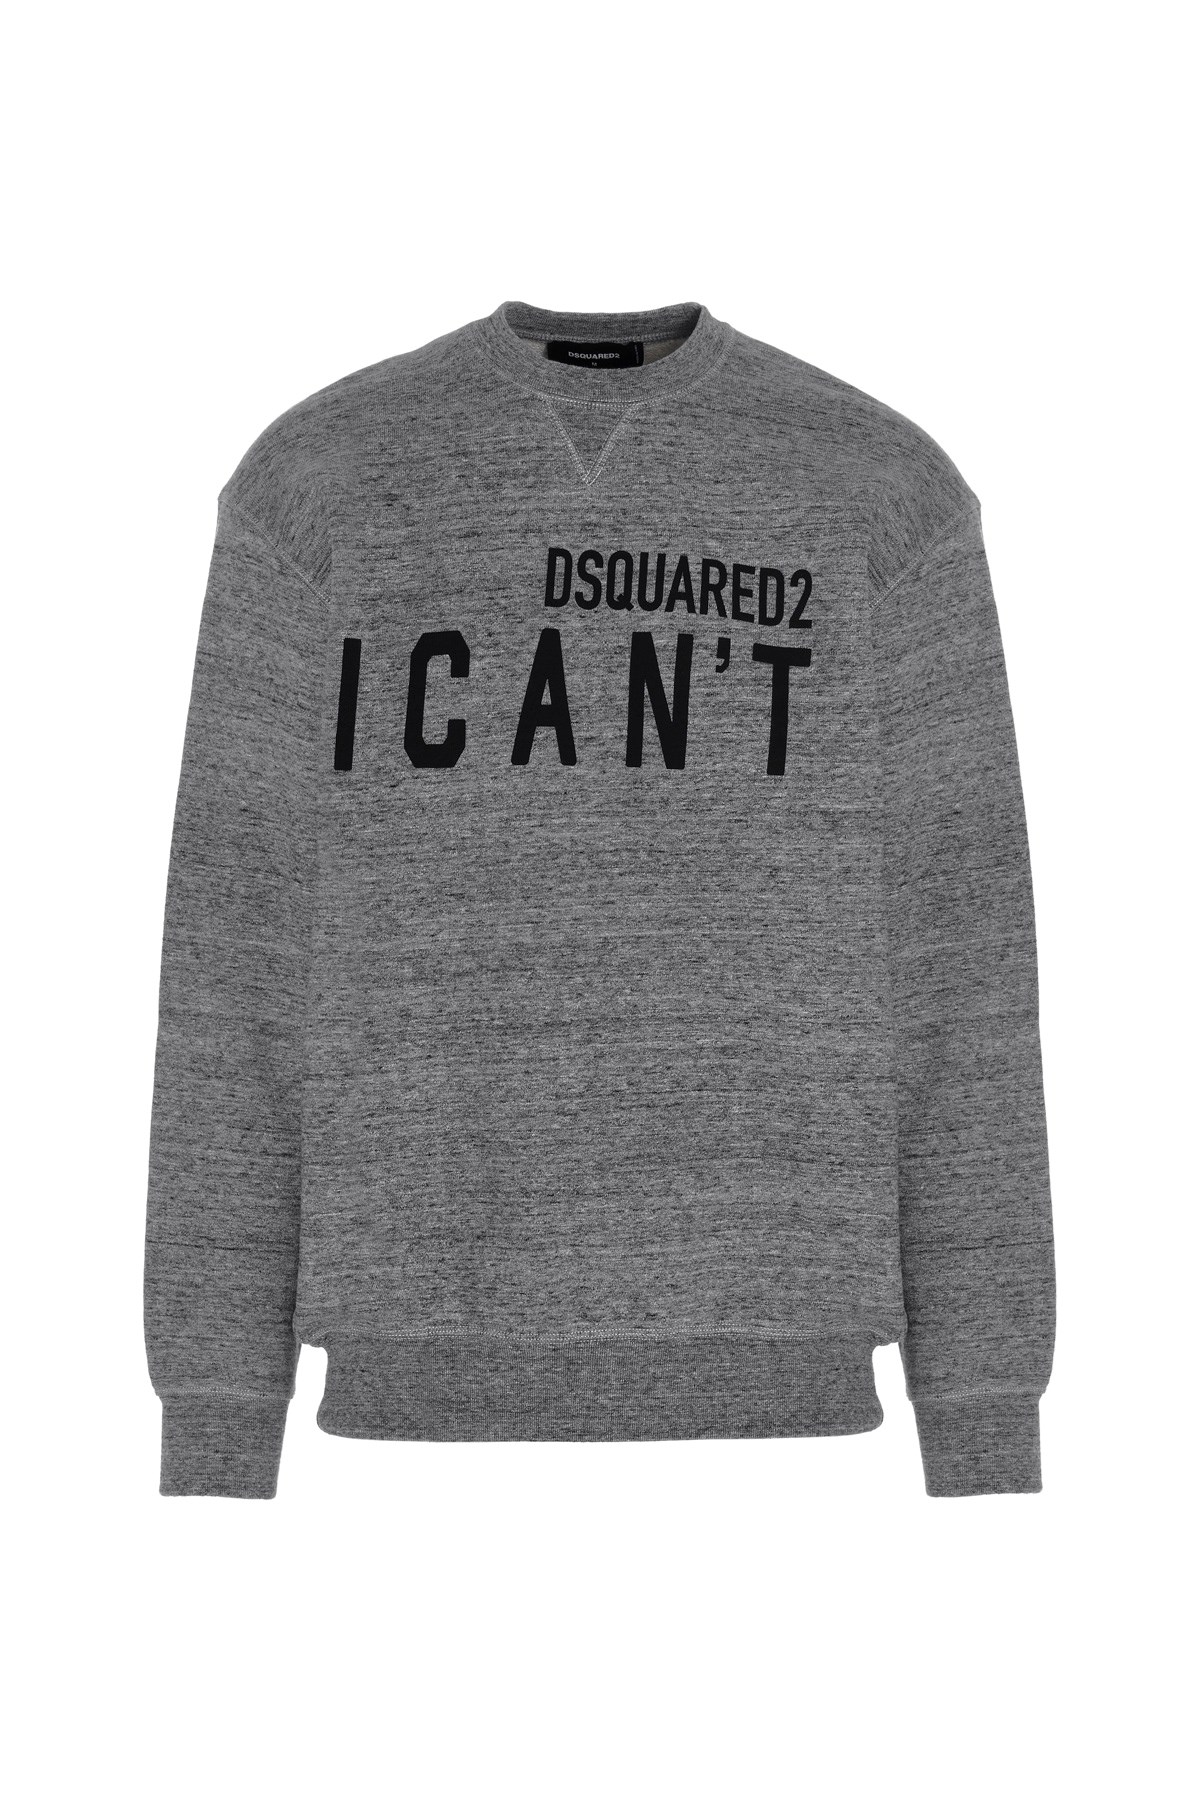 DSQUARED2 'I Can't’ Sweatshirt